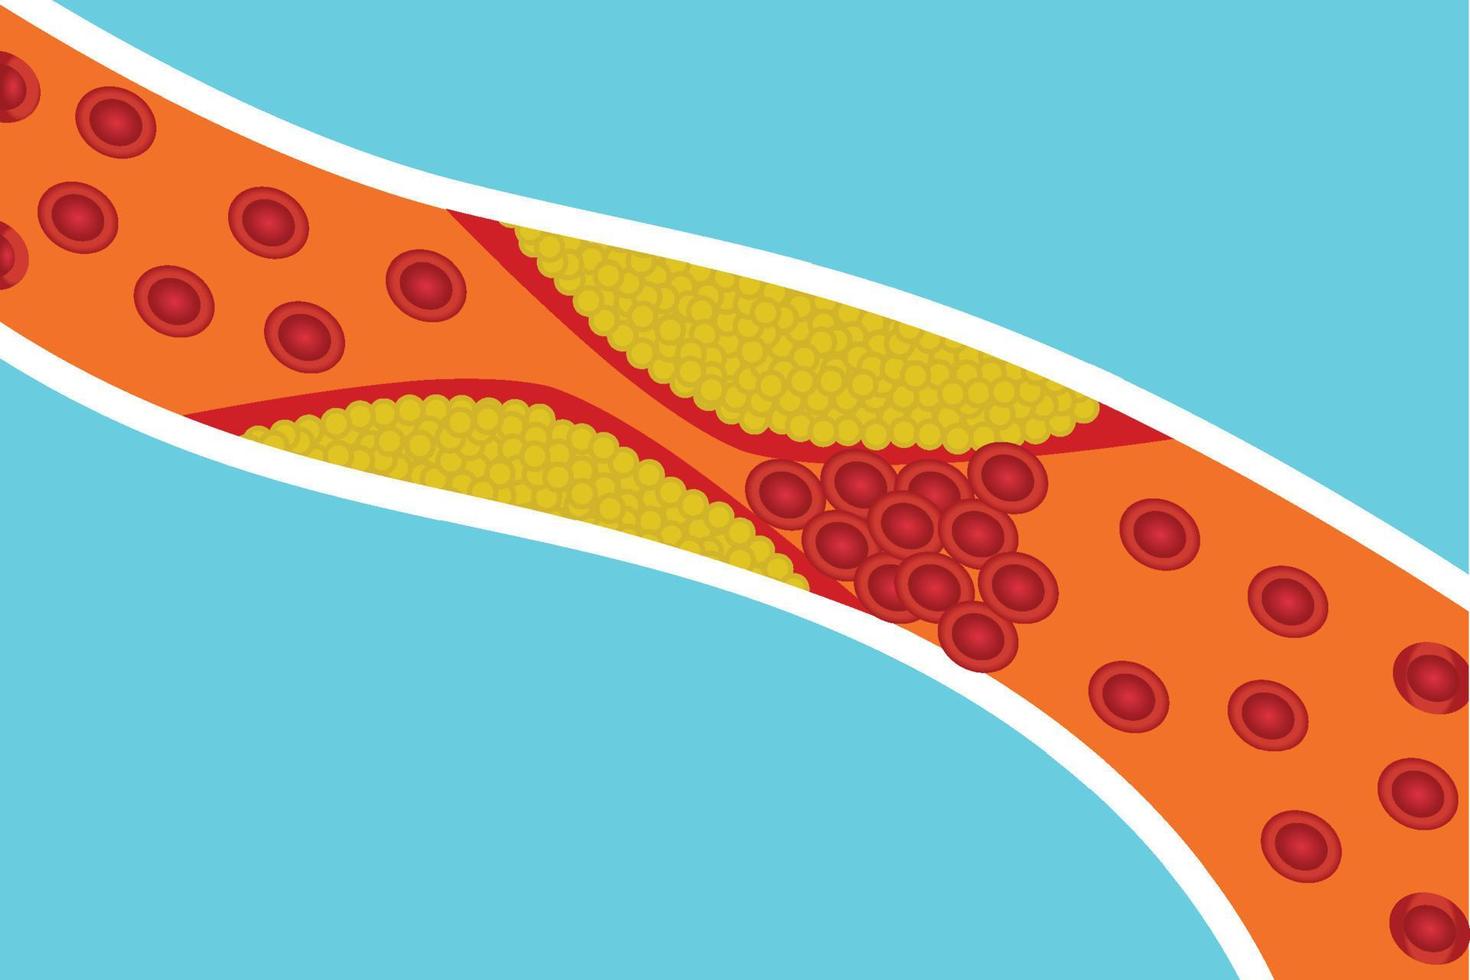 bloedvaten worden geblokkeerd door extra lichaamsvet. rode bloedcellen worden geblokkeerd door geel vet in een slagader. menselijke anatomie en bloedstolling concept vectorillustratie. hart-en vaatziekten. vector